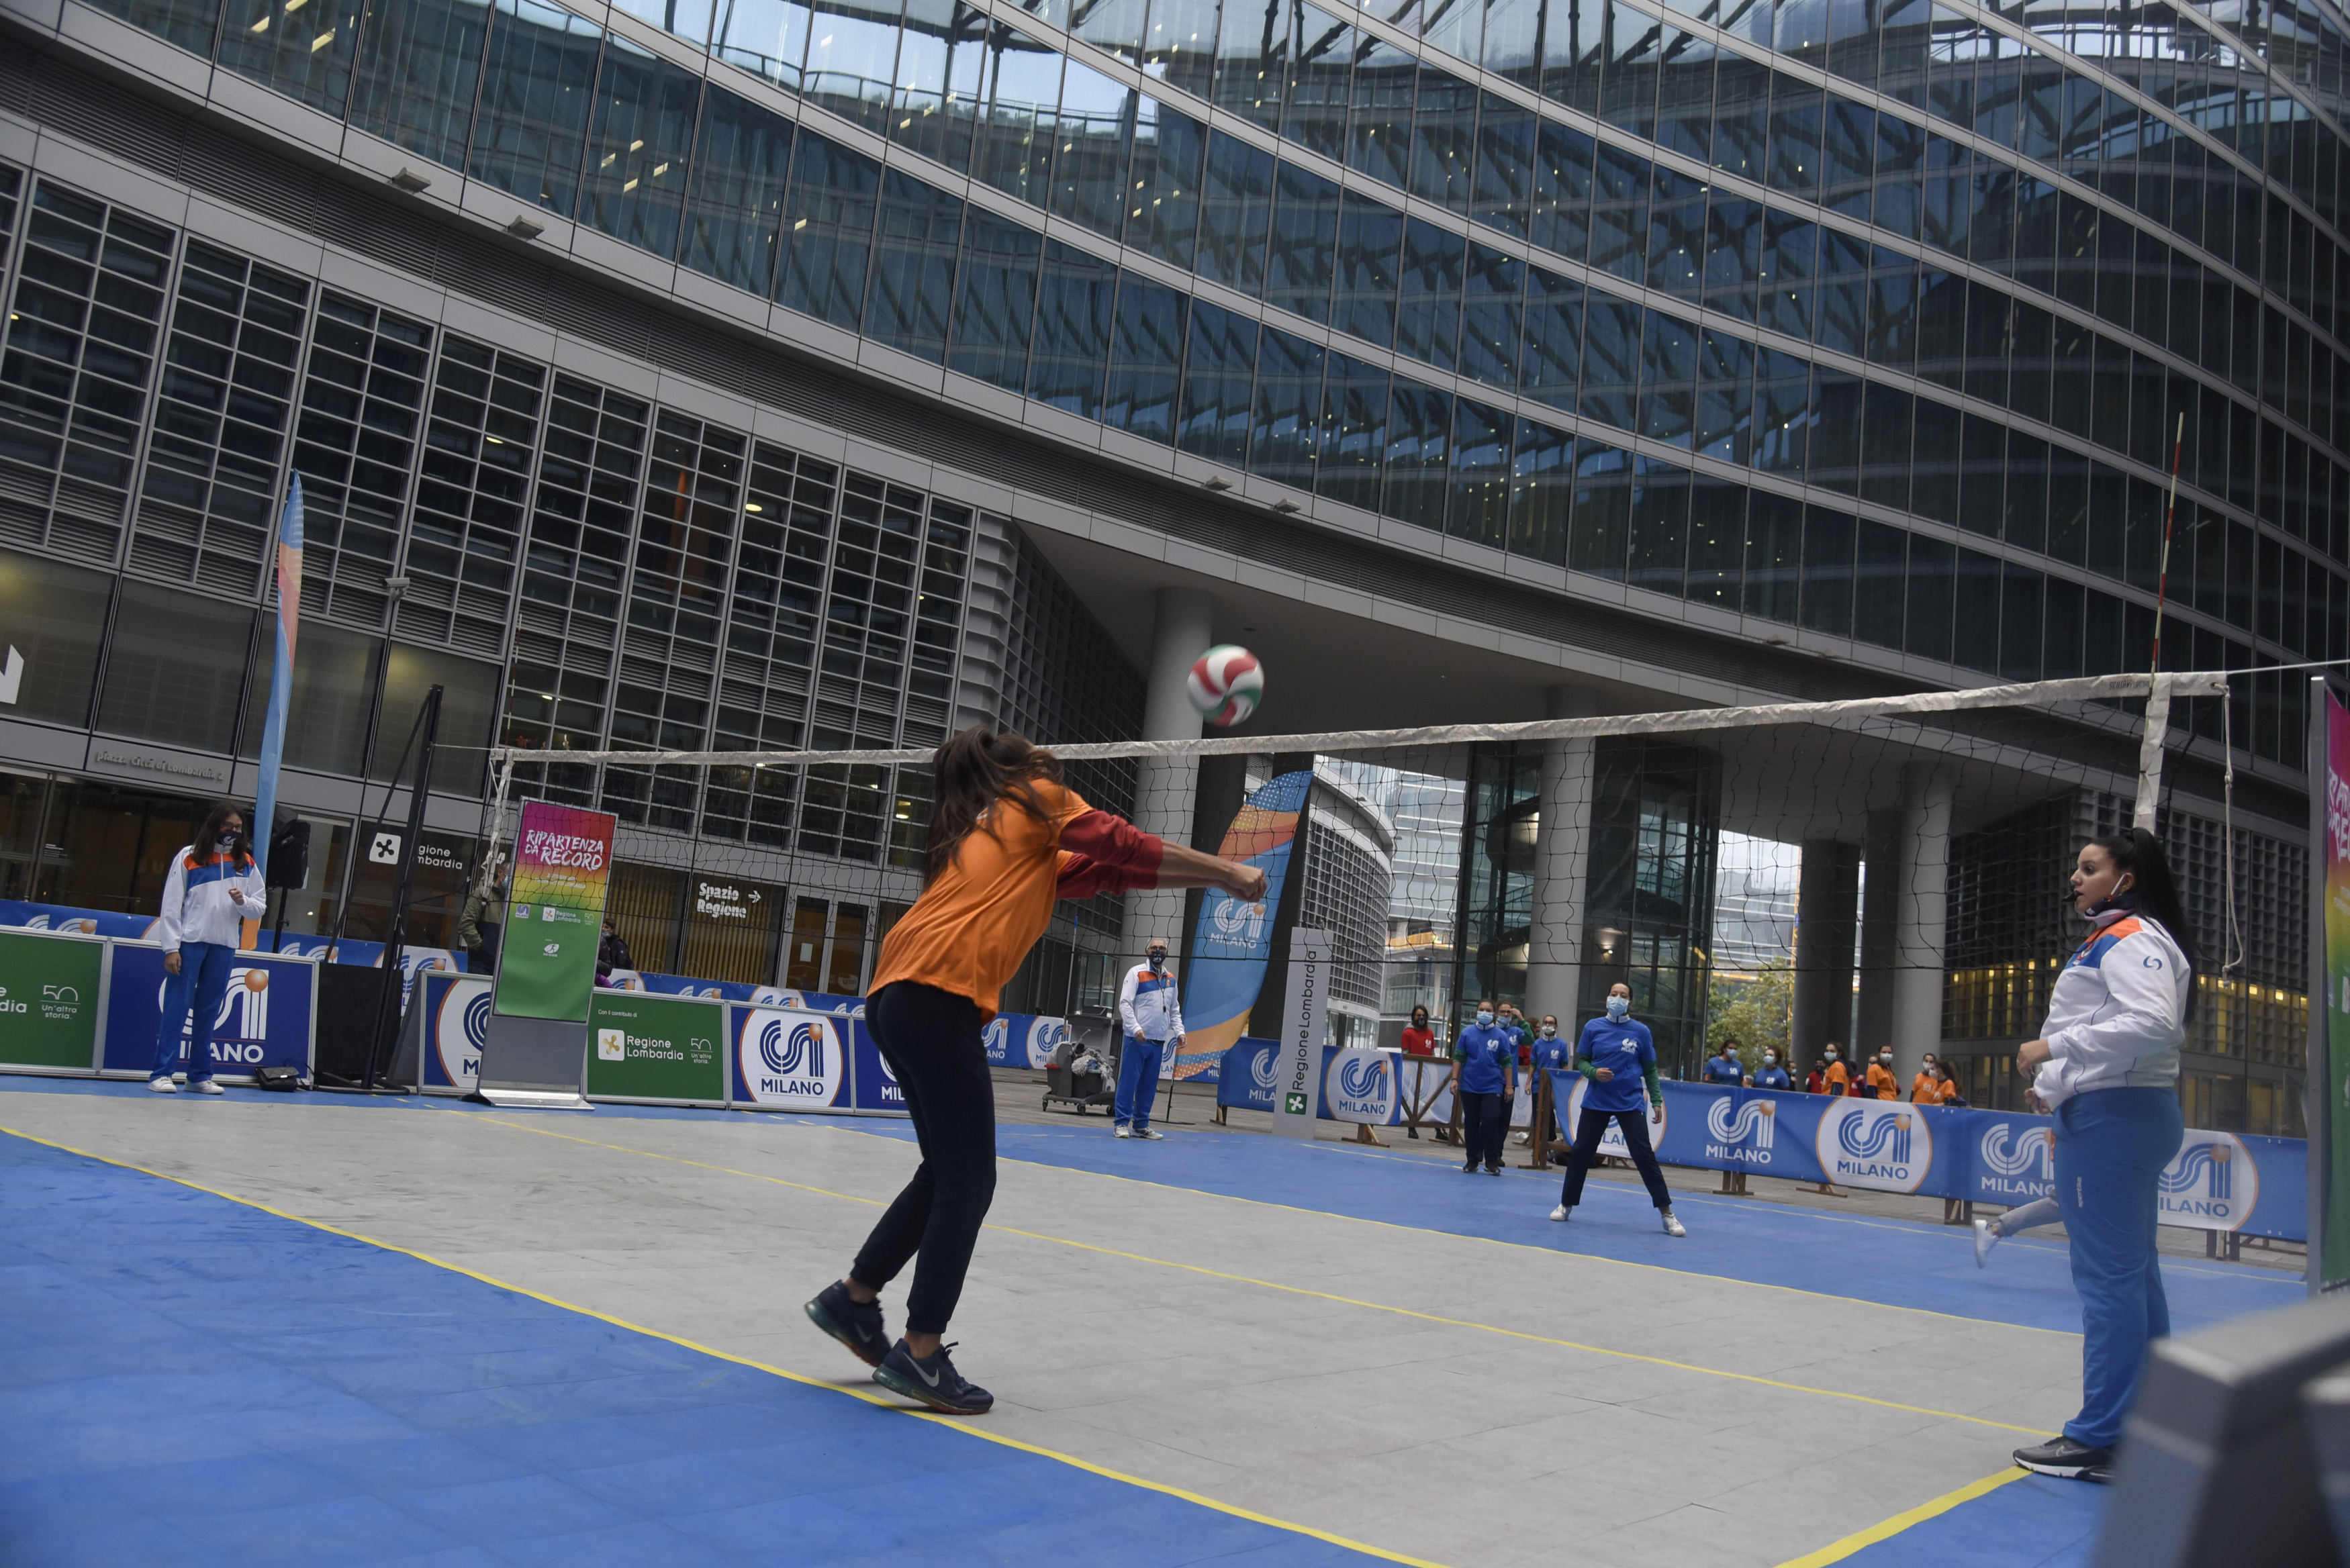 Volley, record palleggi stabilito nella piazza coperta più grande d’Italia